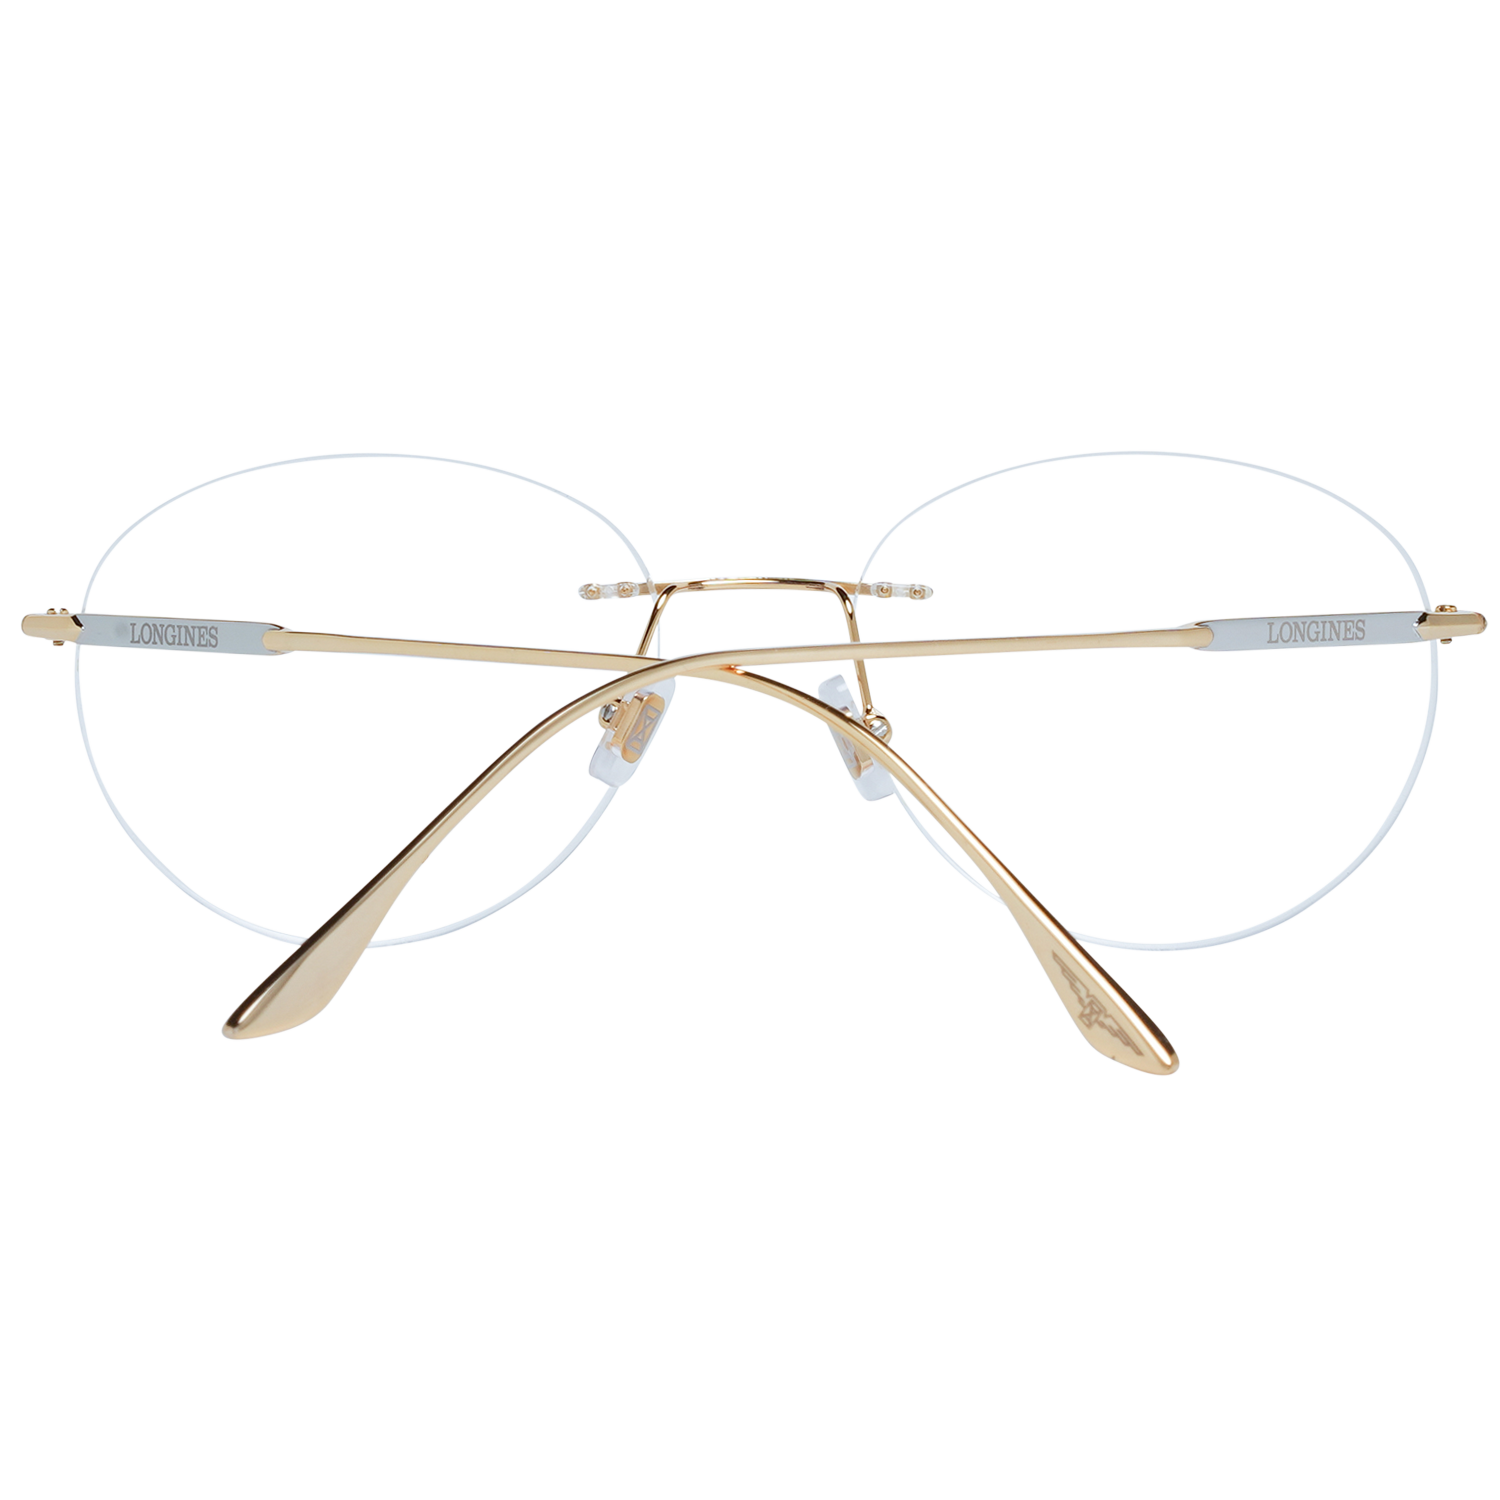 Longines Frames Longines Optical Frame LG5002-H 030 53 Eyeglasses Eyewear UK USA Australia 